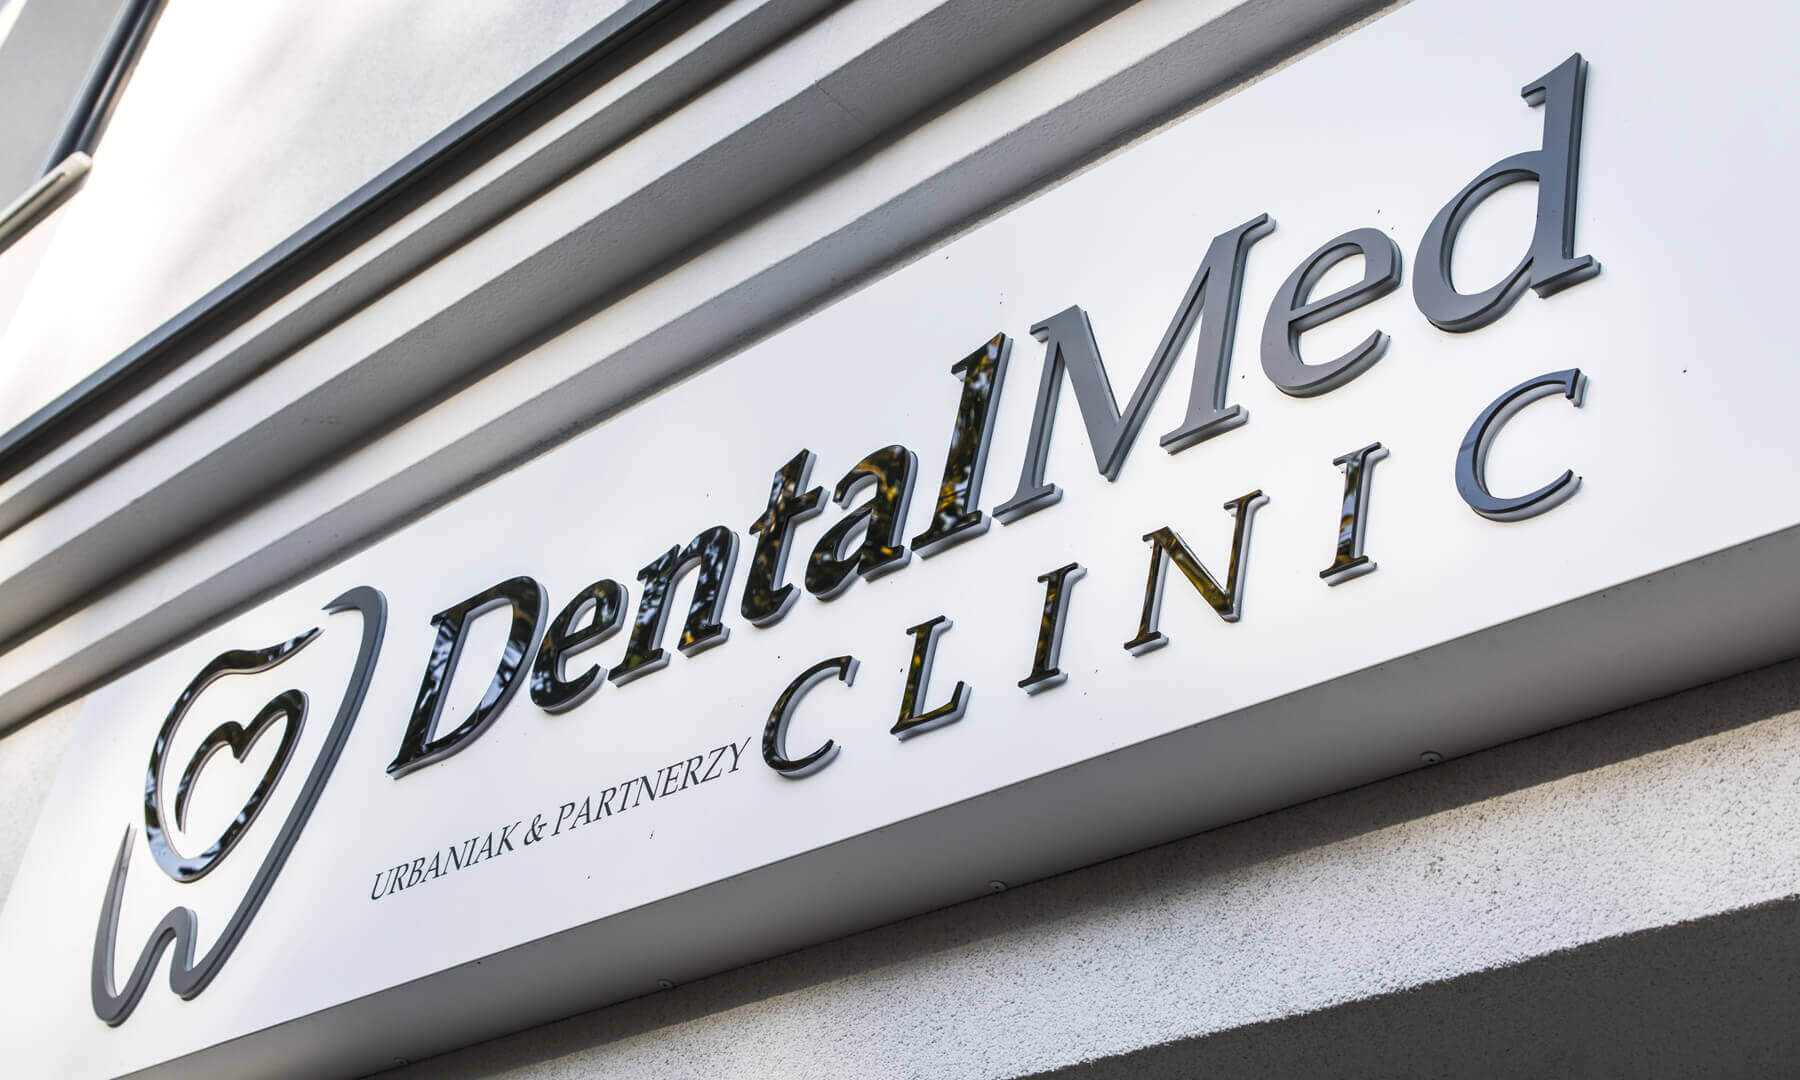 DentalMed - DentalMed - Spatial letters on an advertising coffer above the entrance